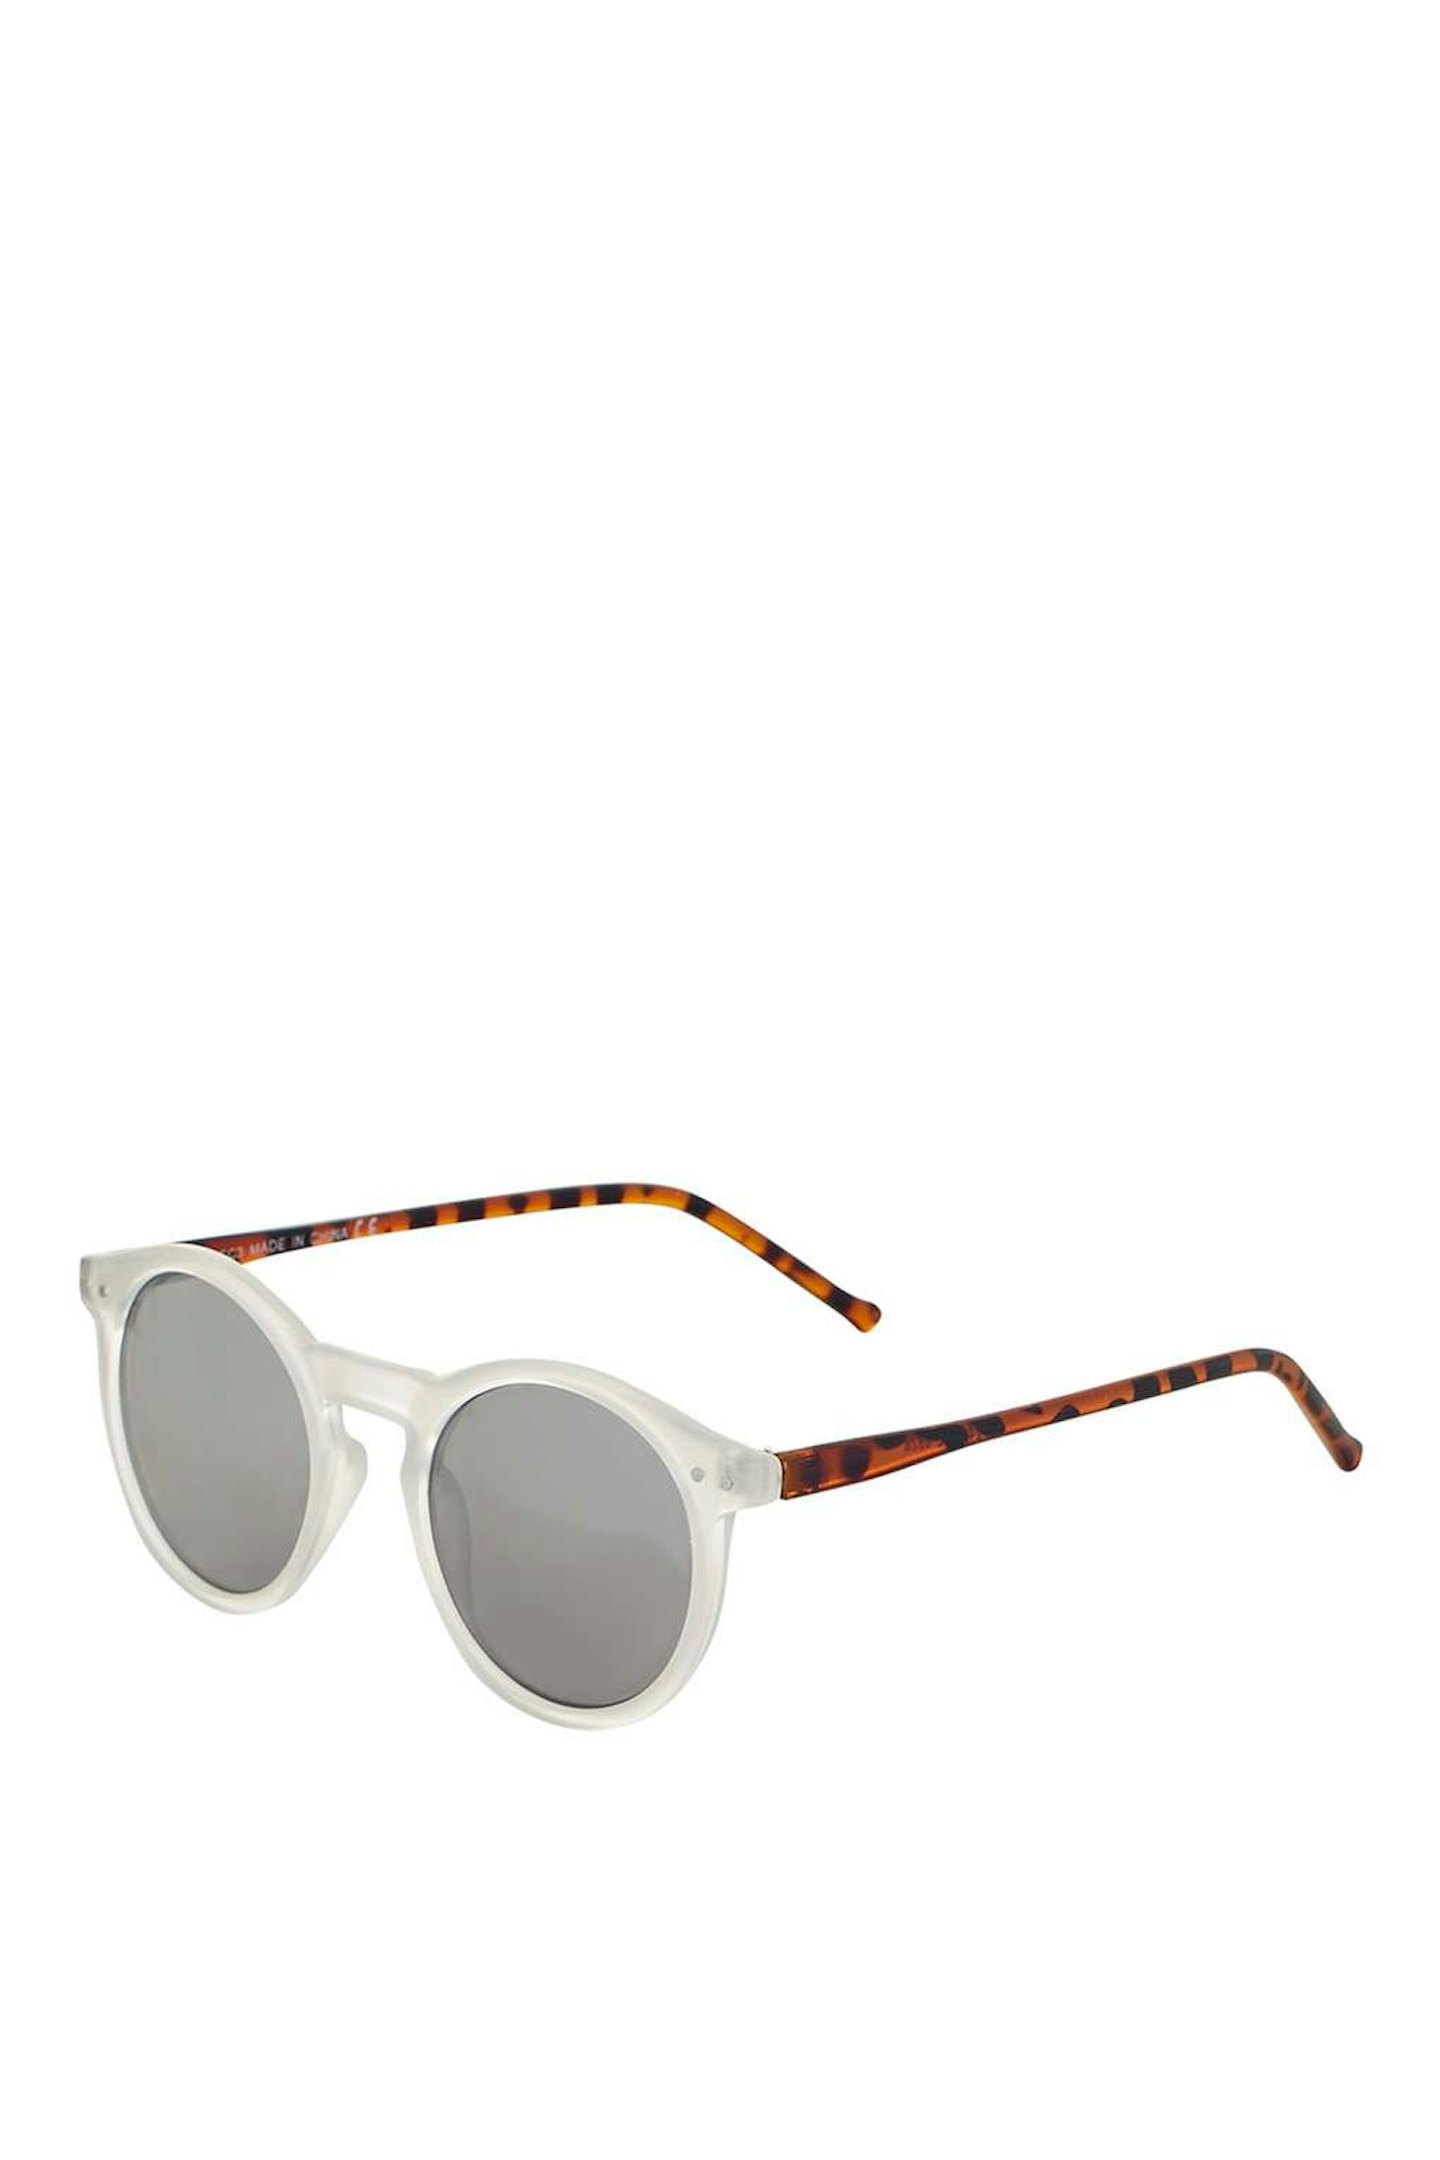 white-sunglasses